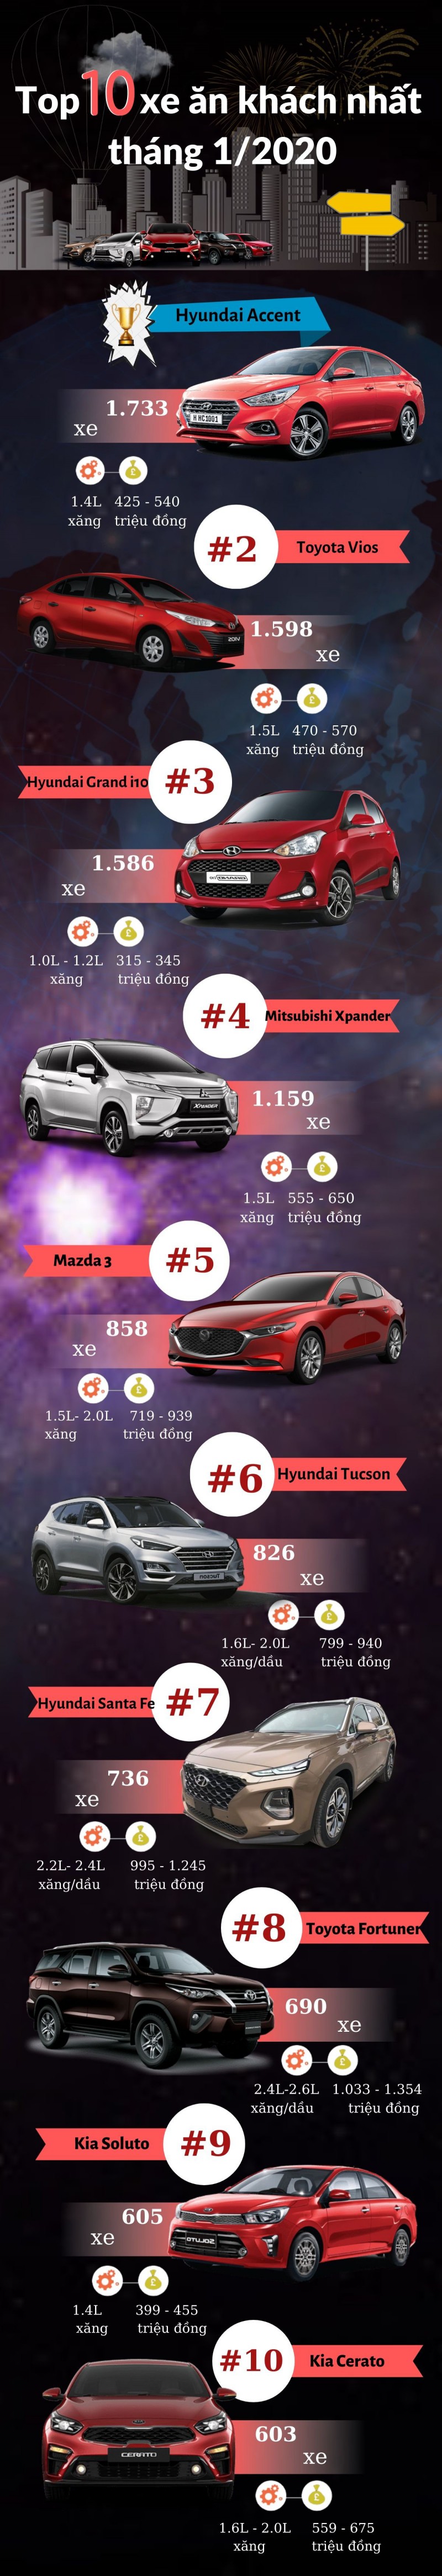 Infographic: Top 10 mẫu xe bán chạy nhất tháng 1/2020